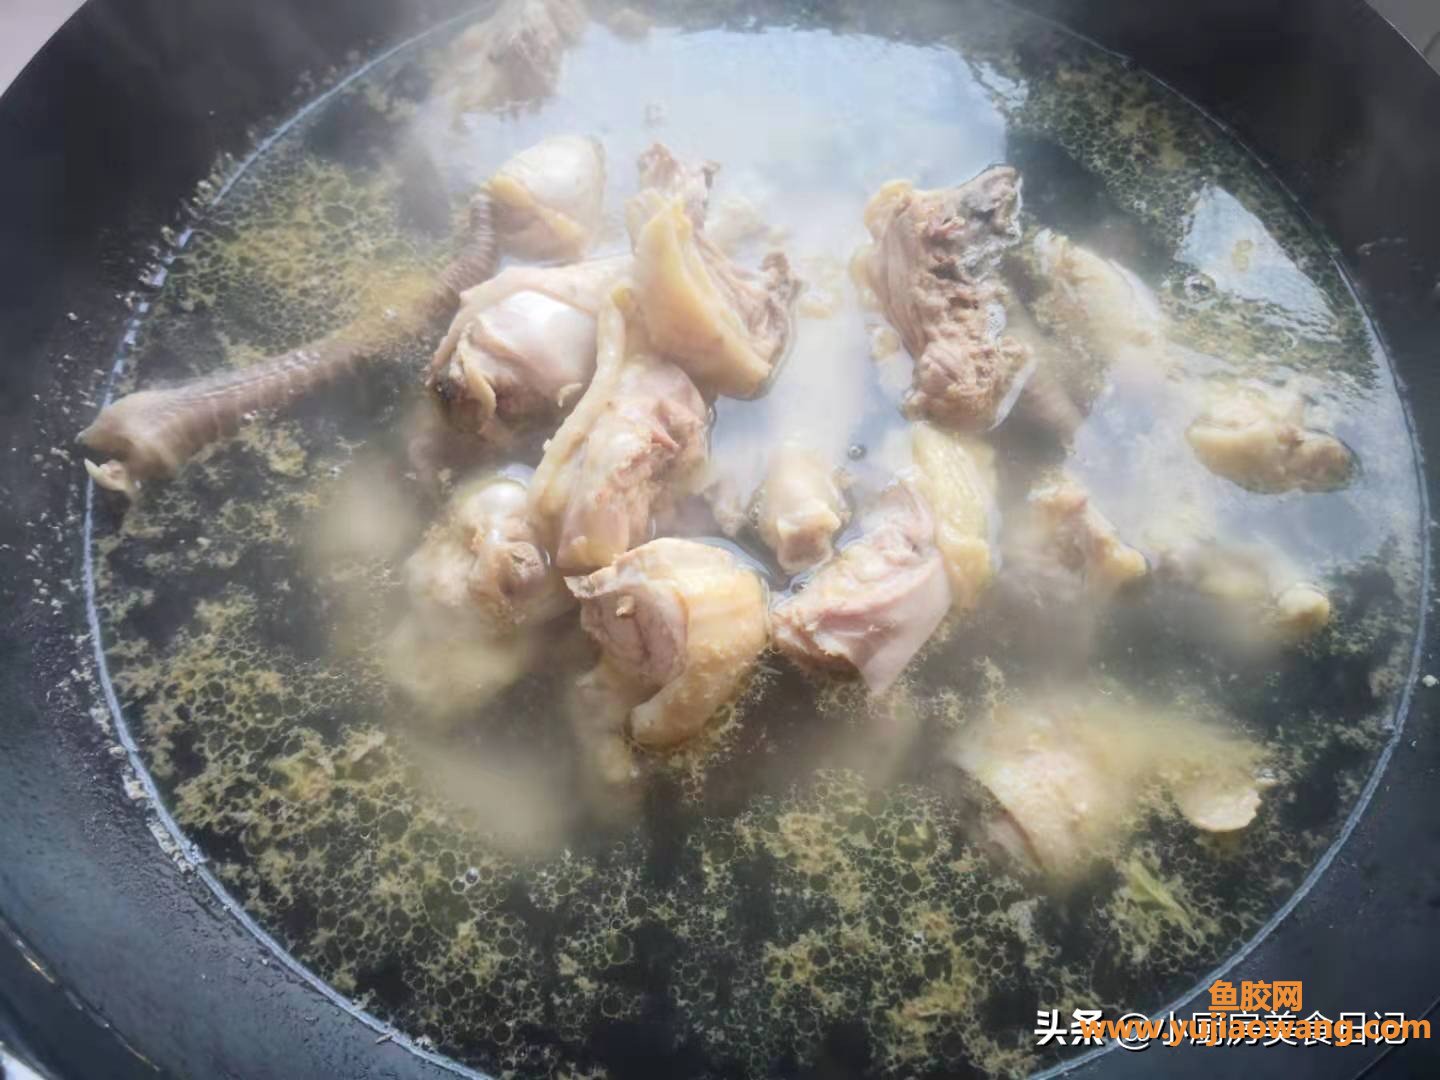 (鸡肉羊肚菌鱼胶汤)非常时期，给家人炖一锅鲜美的羊肚菌花胶鸡汤，增